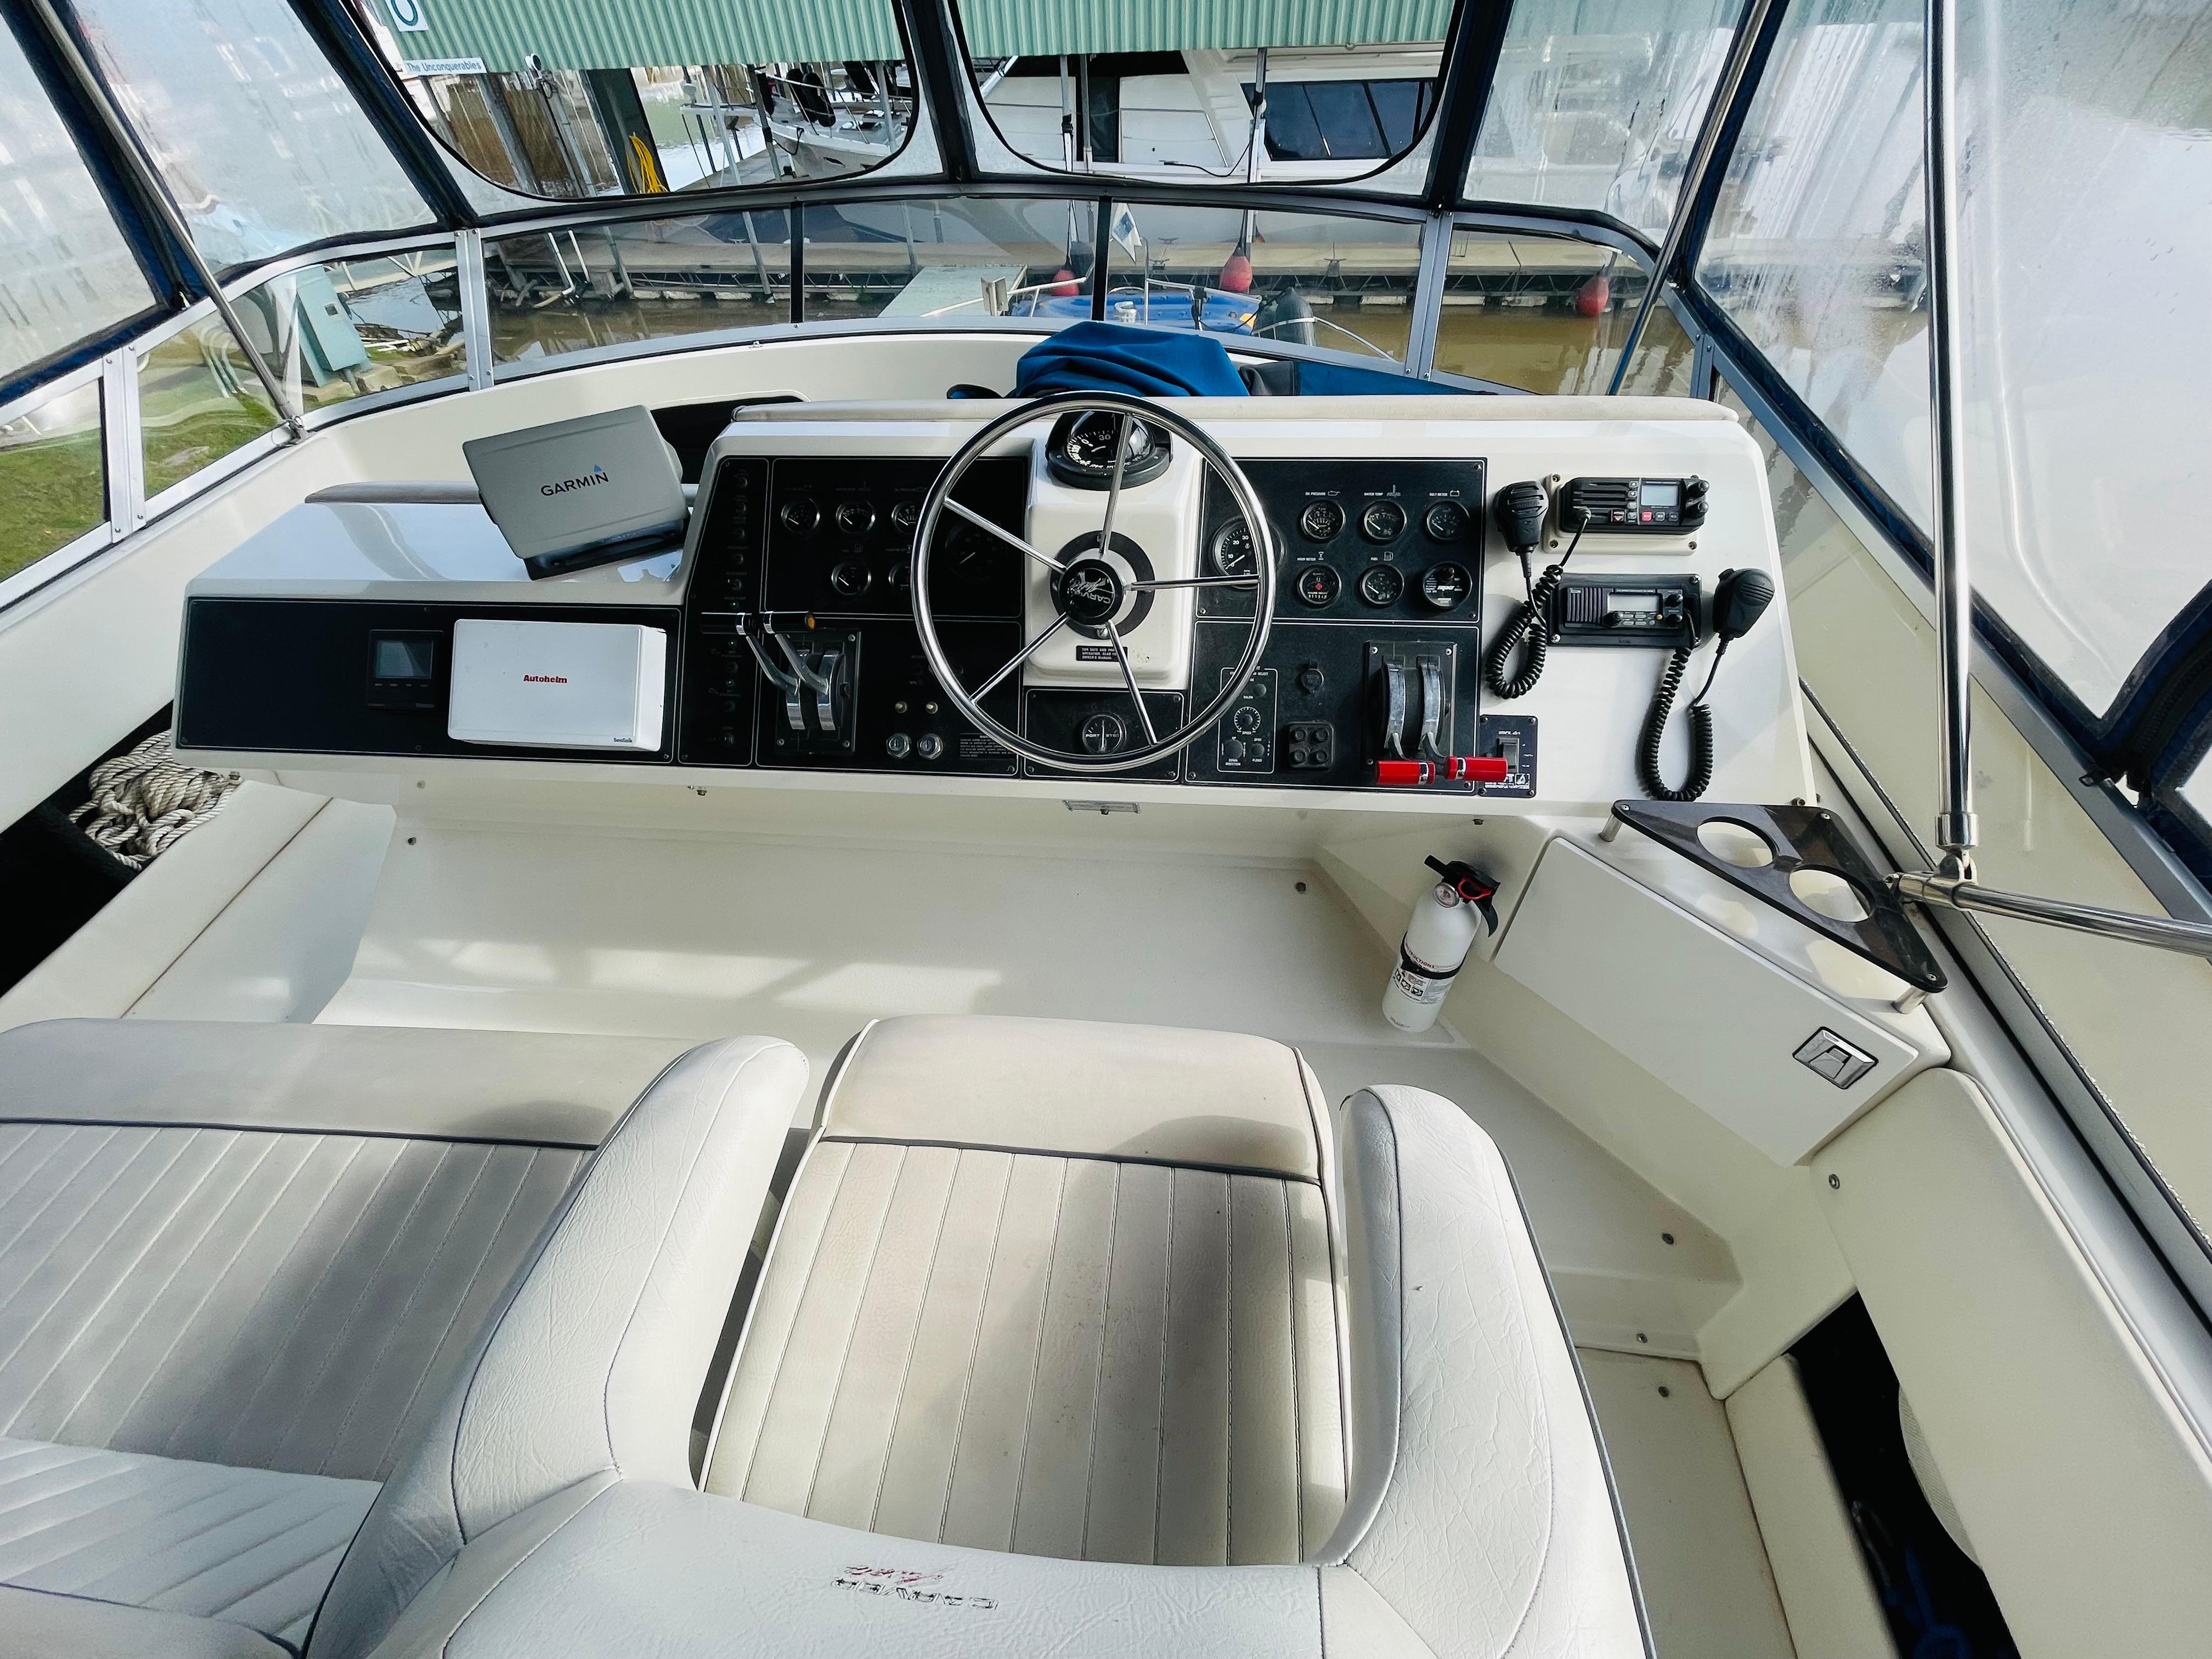 1992 Carver 36 Aft Cabin Motor Yacht